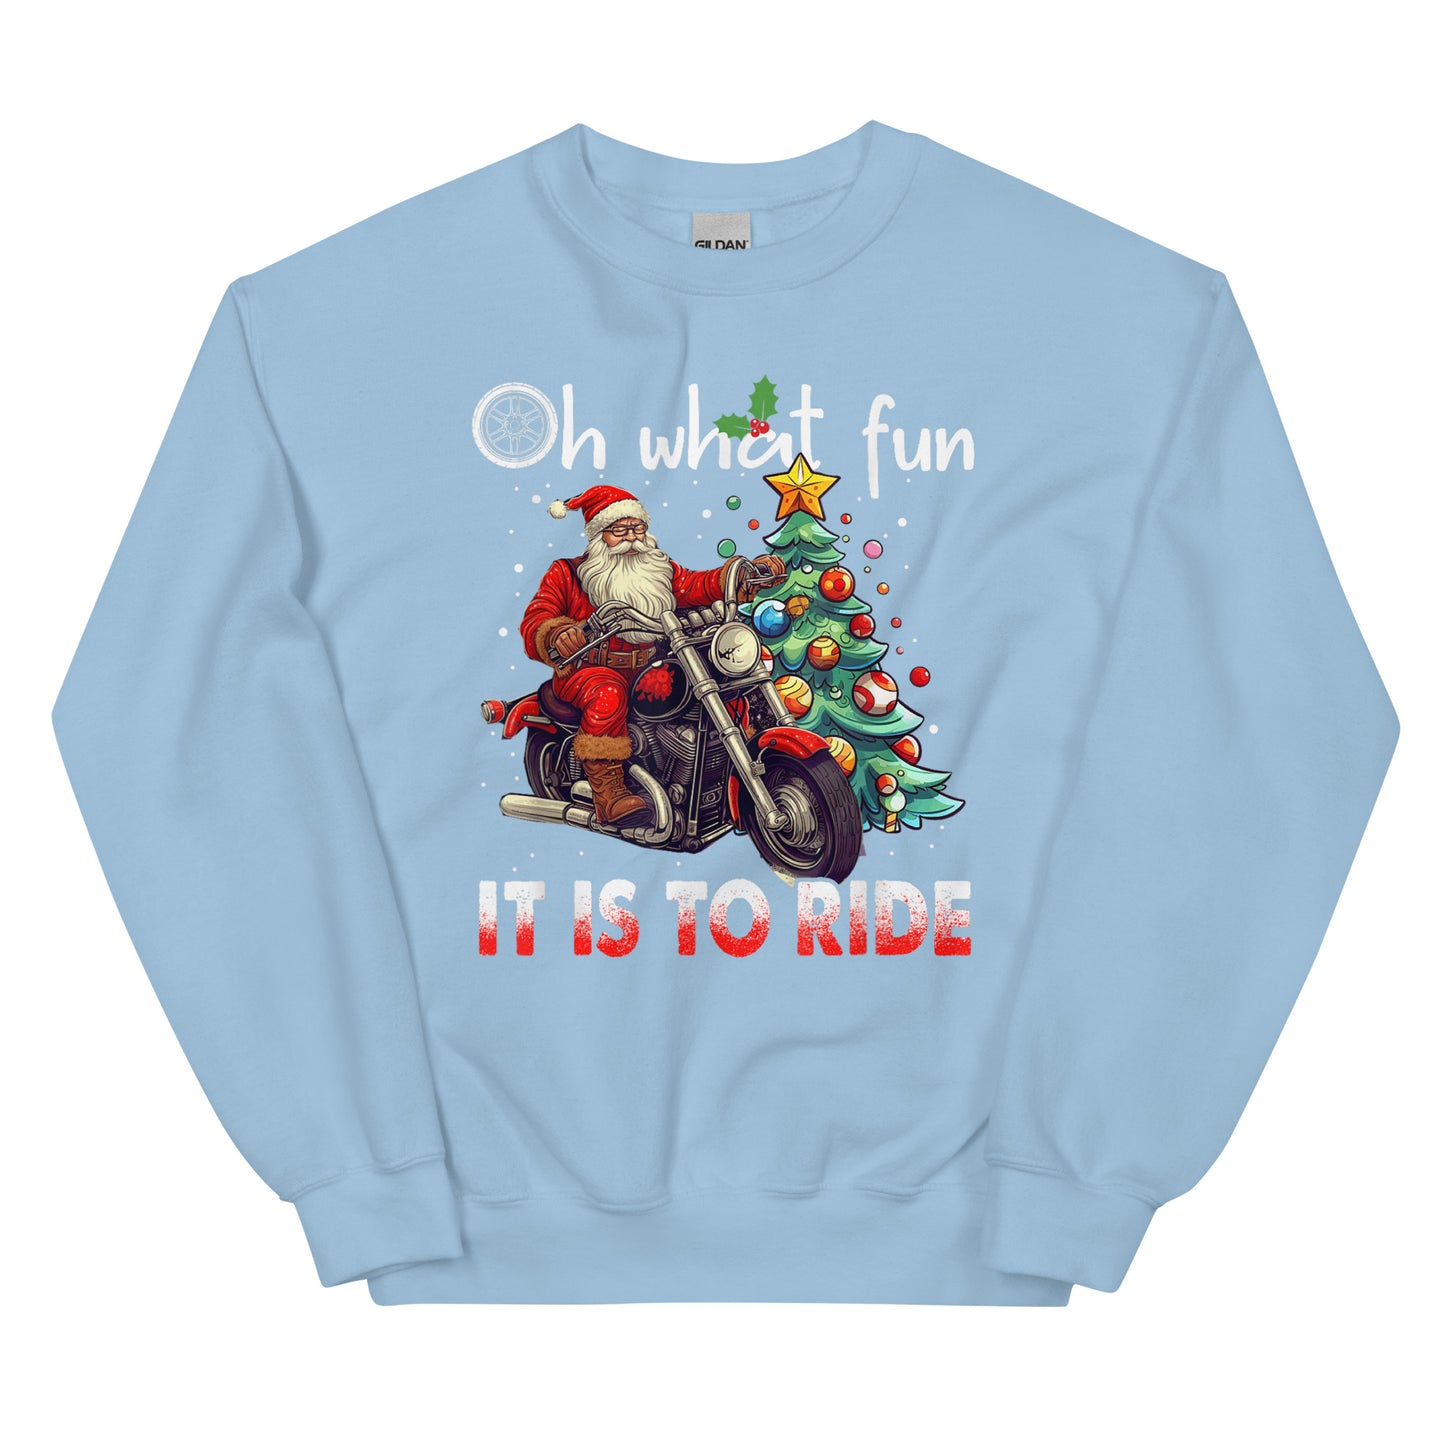 Biker Christmas Sweatshirt